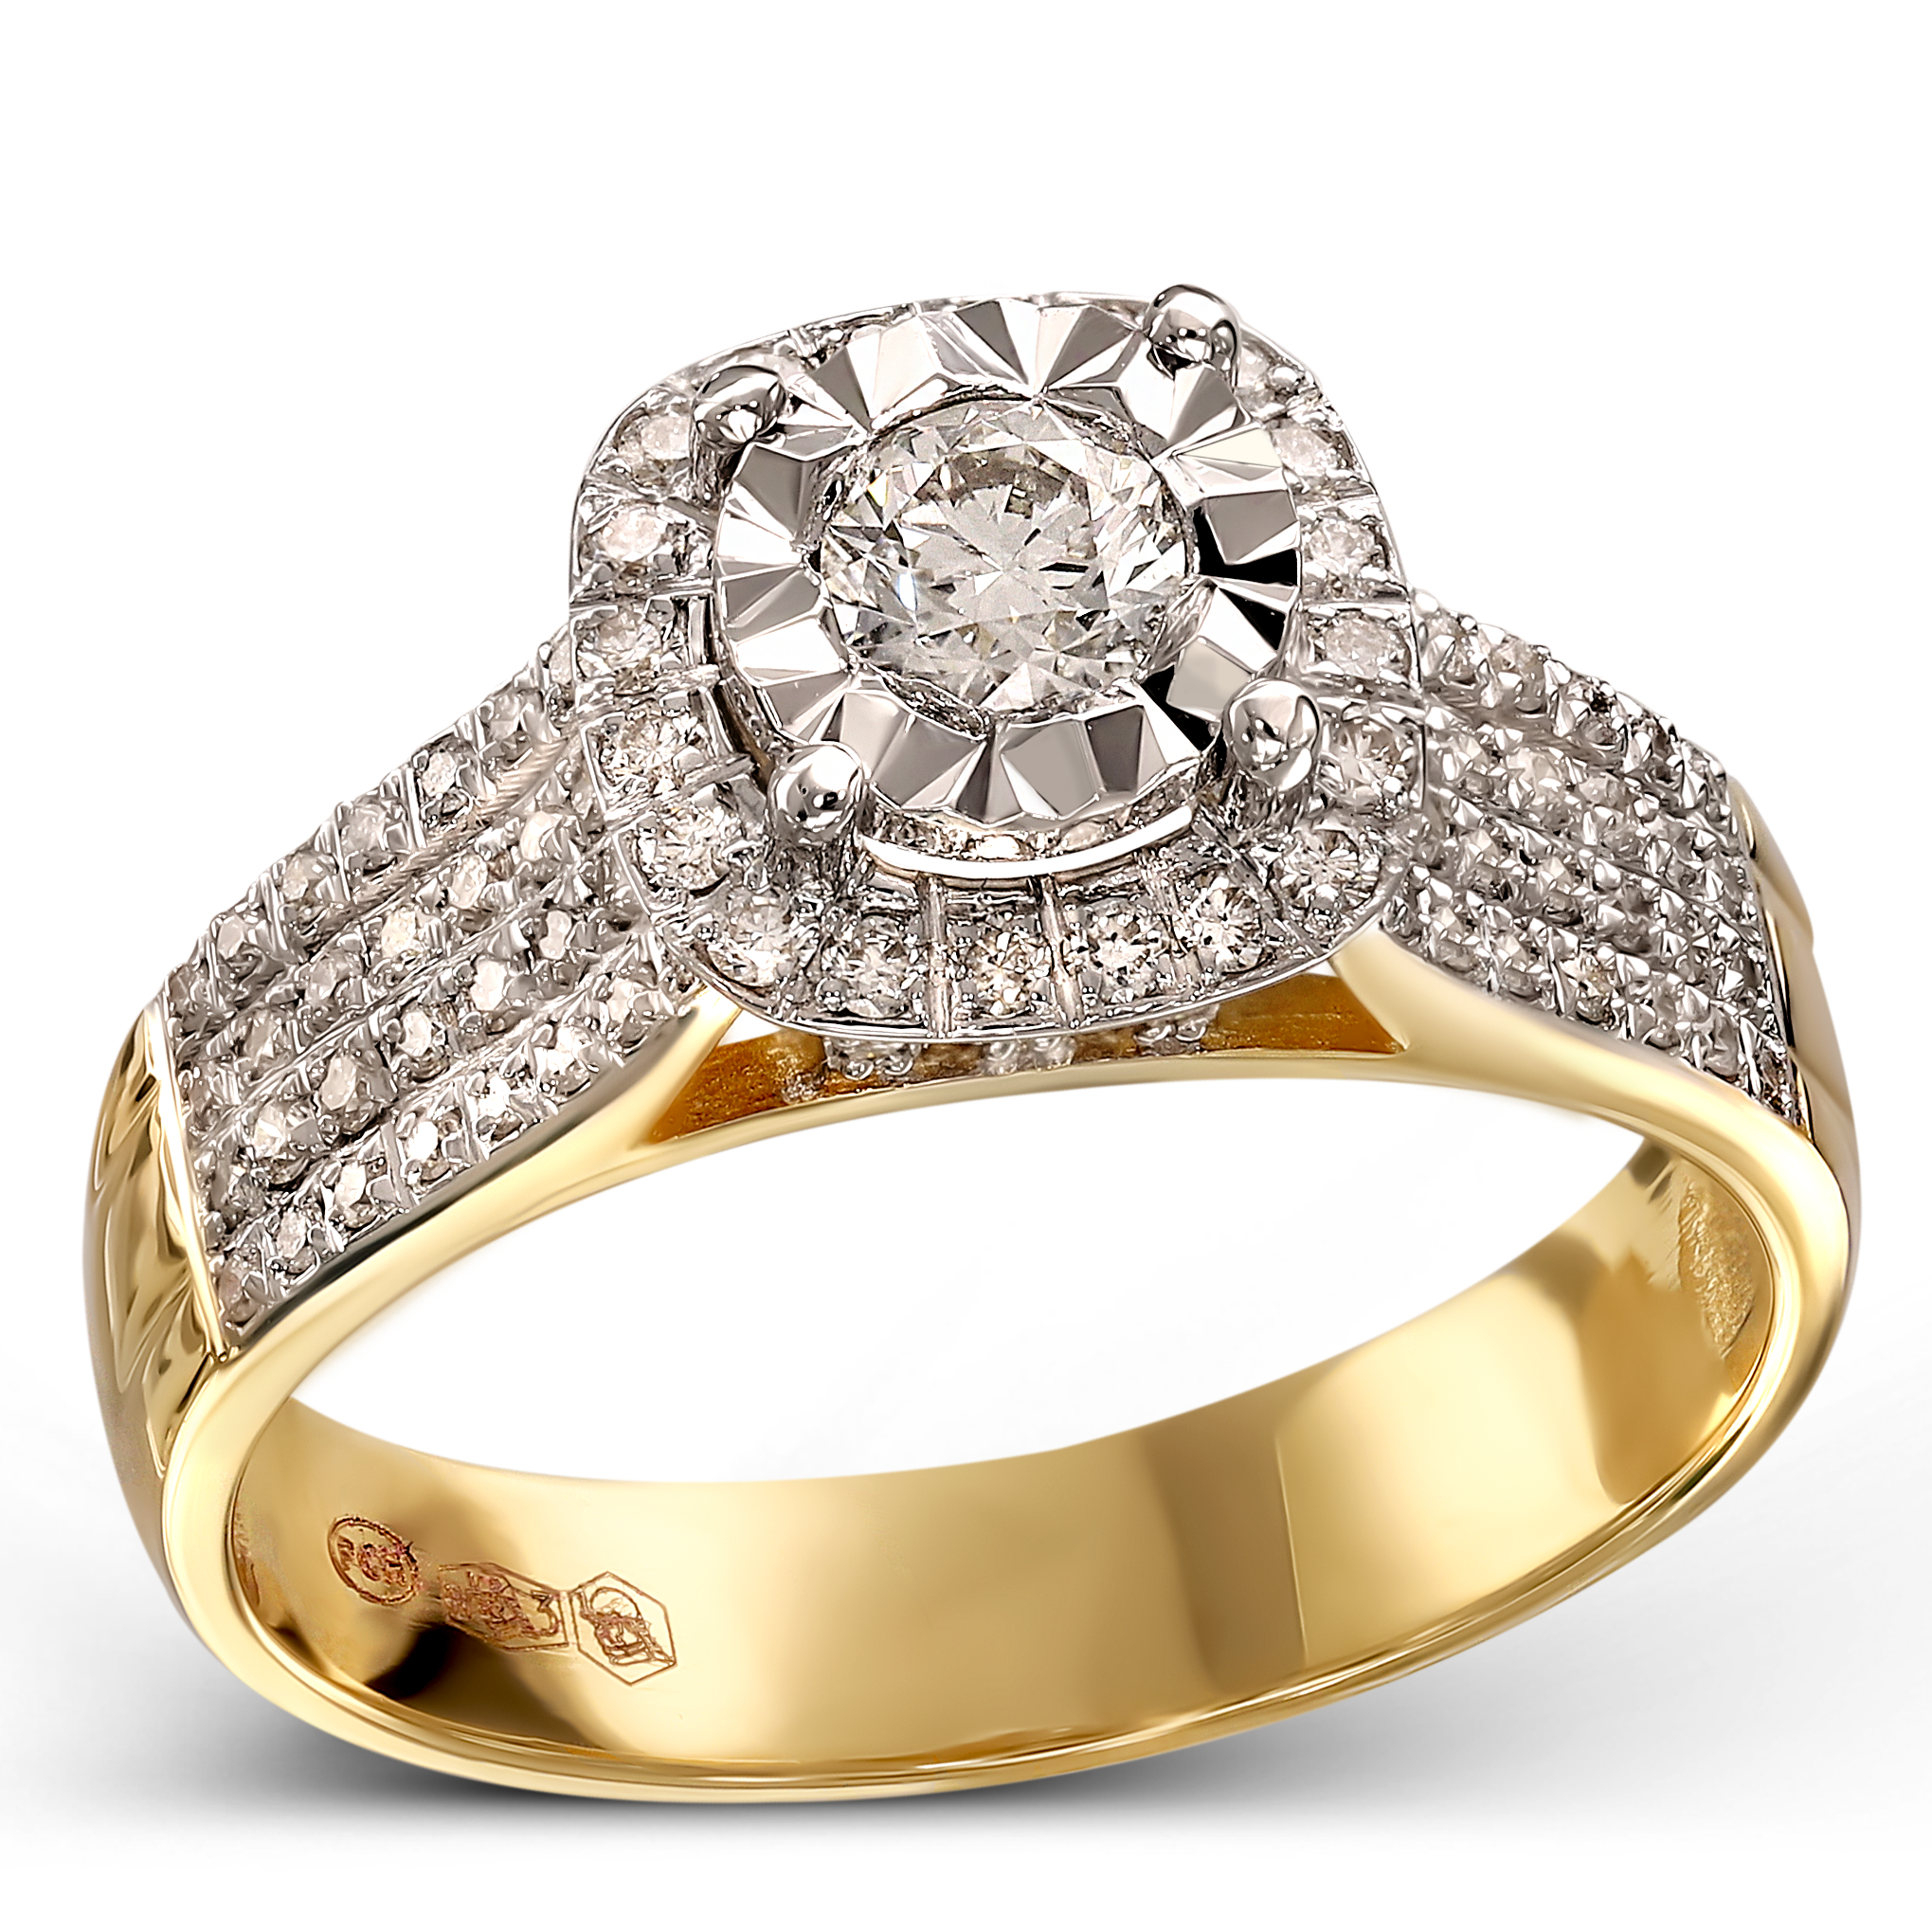 Luksusowy pierścionek złoty z diamentami naturalnymi, próba 585